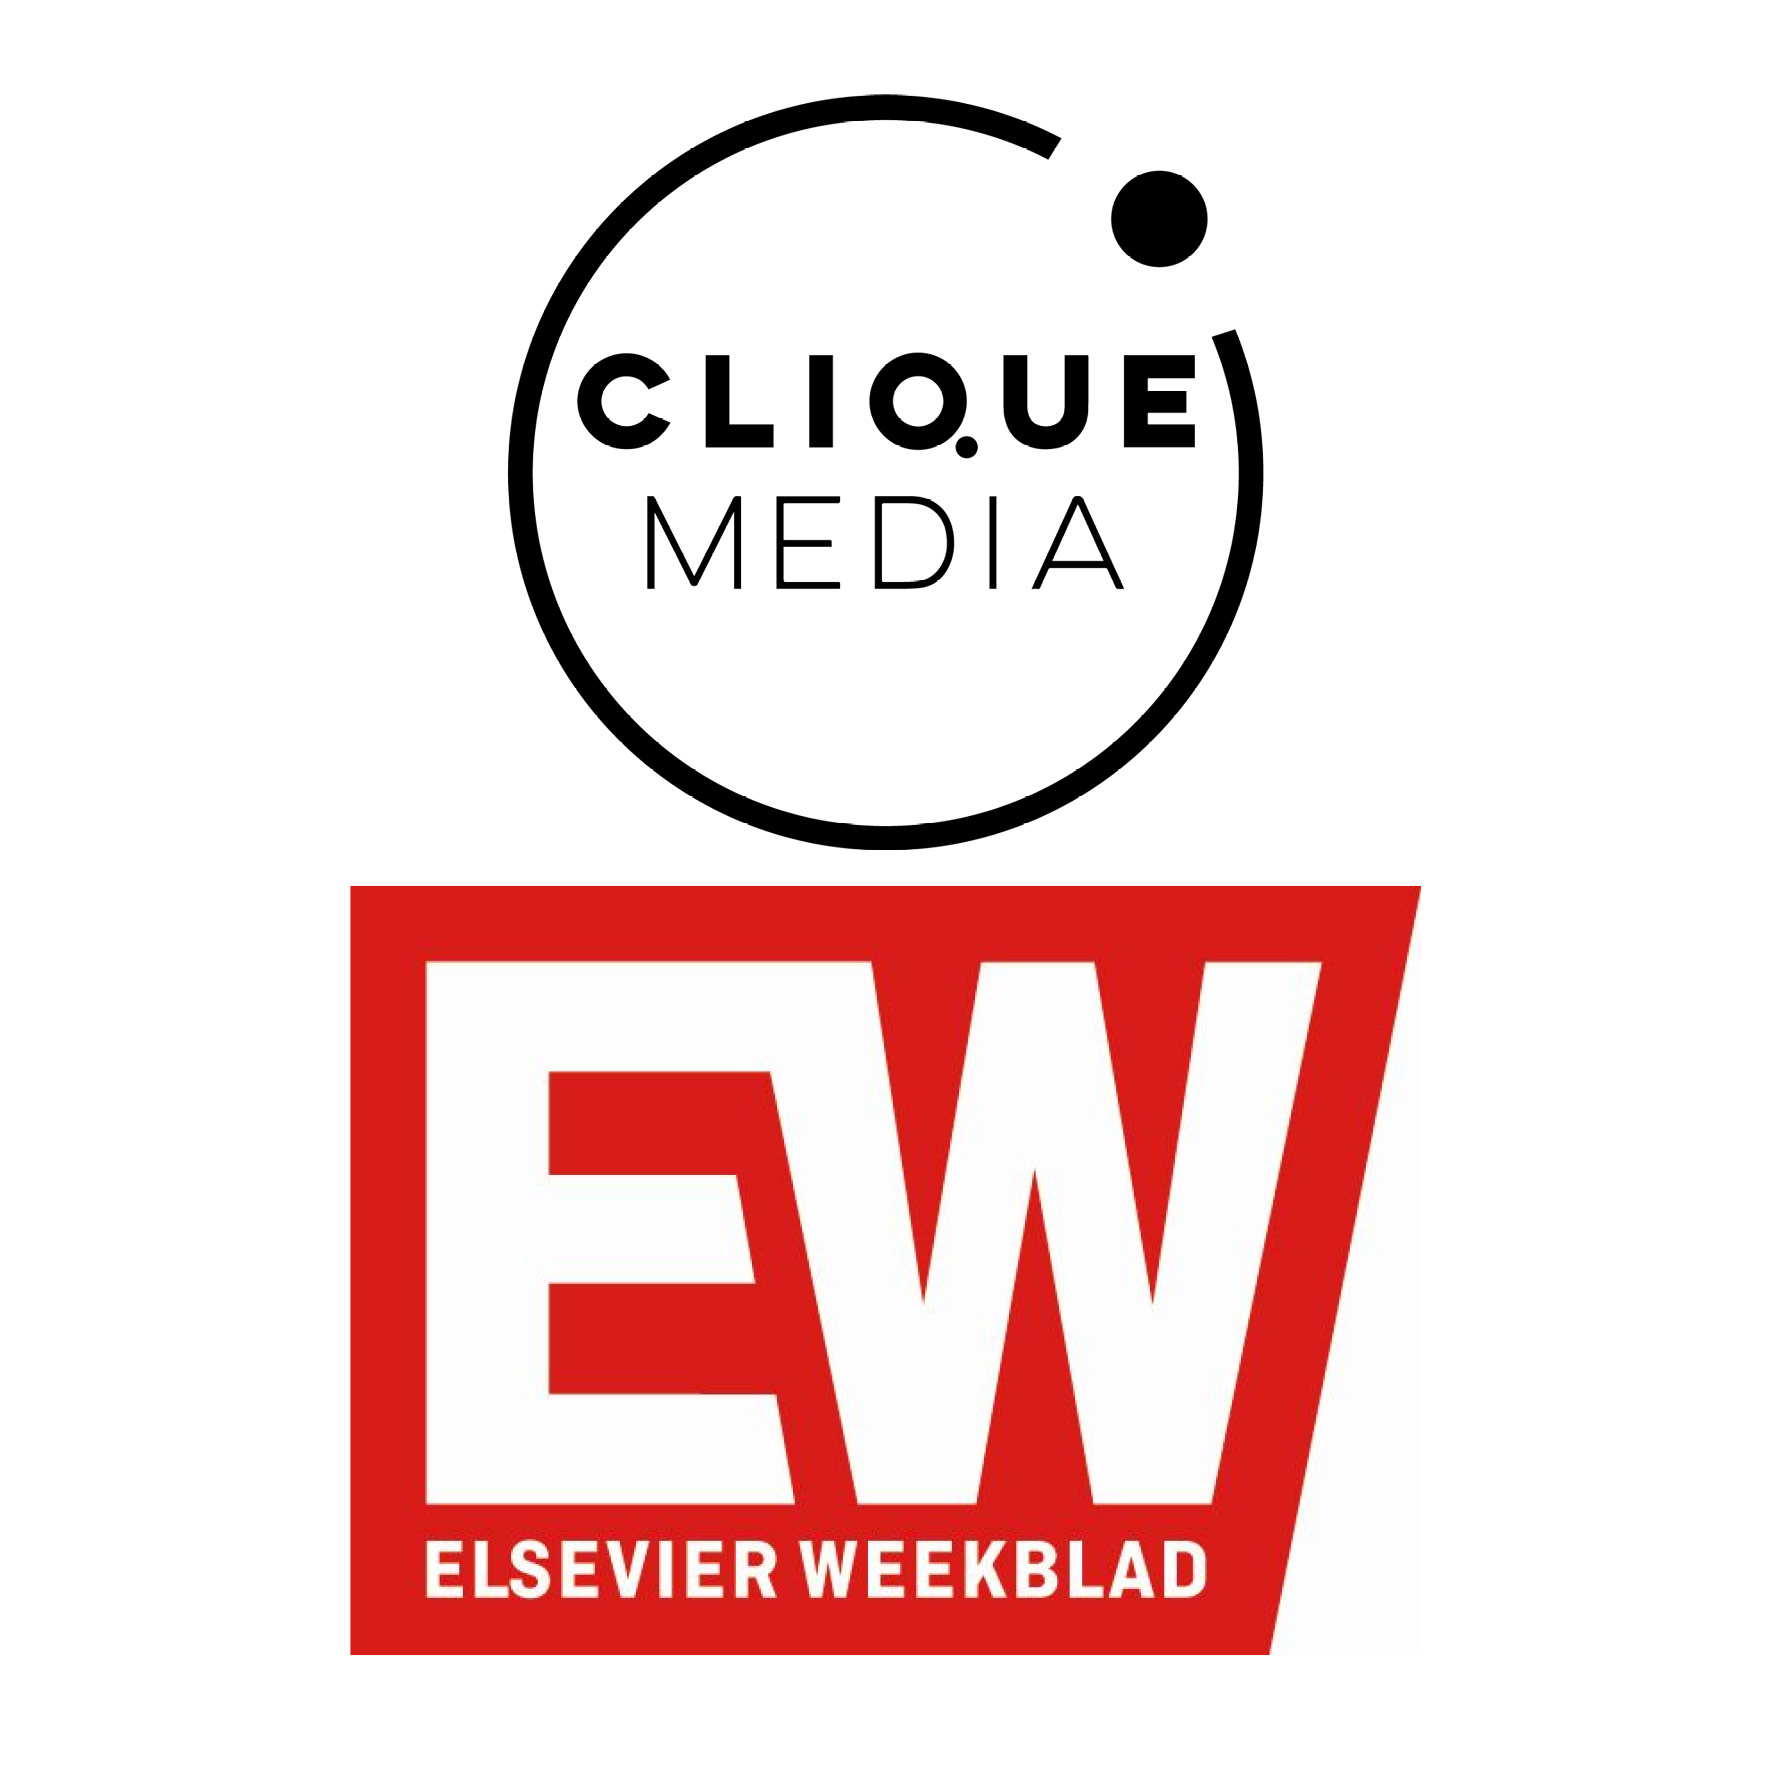 Elsevier weekblad Clique Hersenletsel